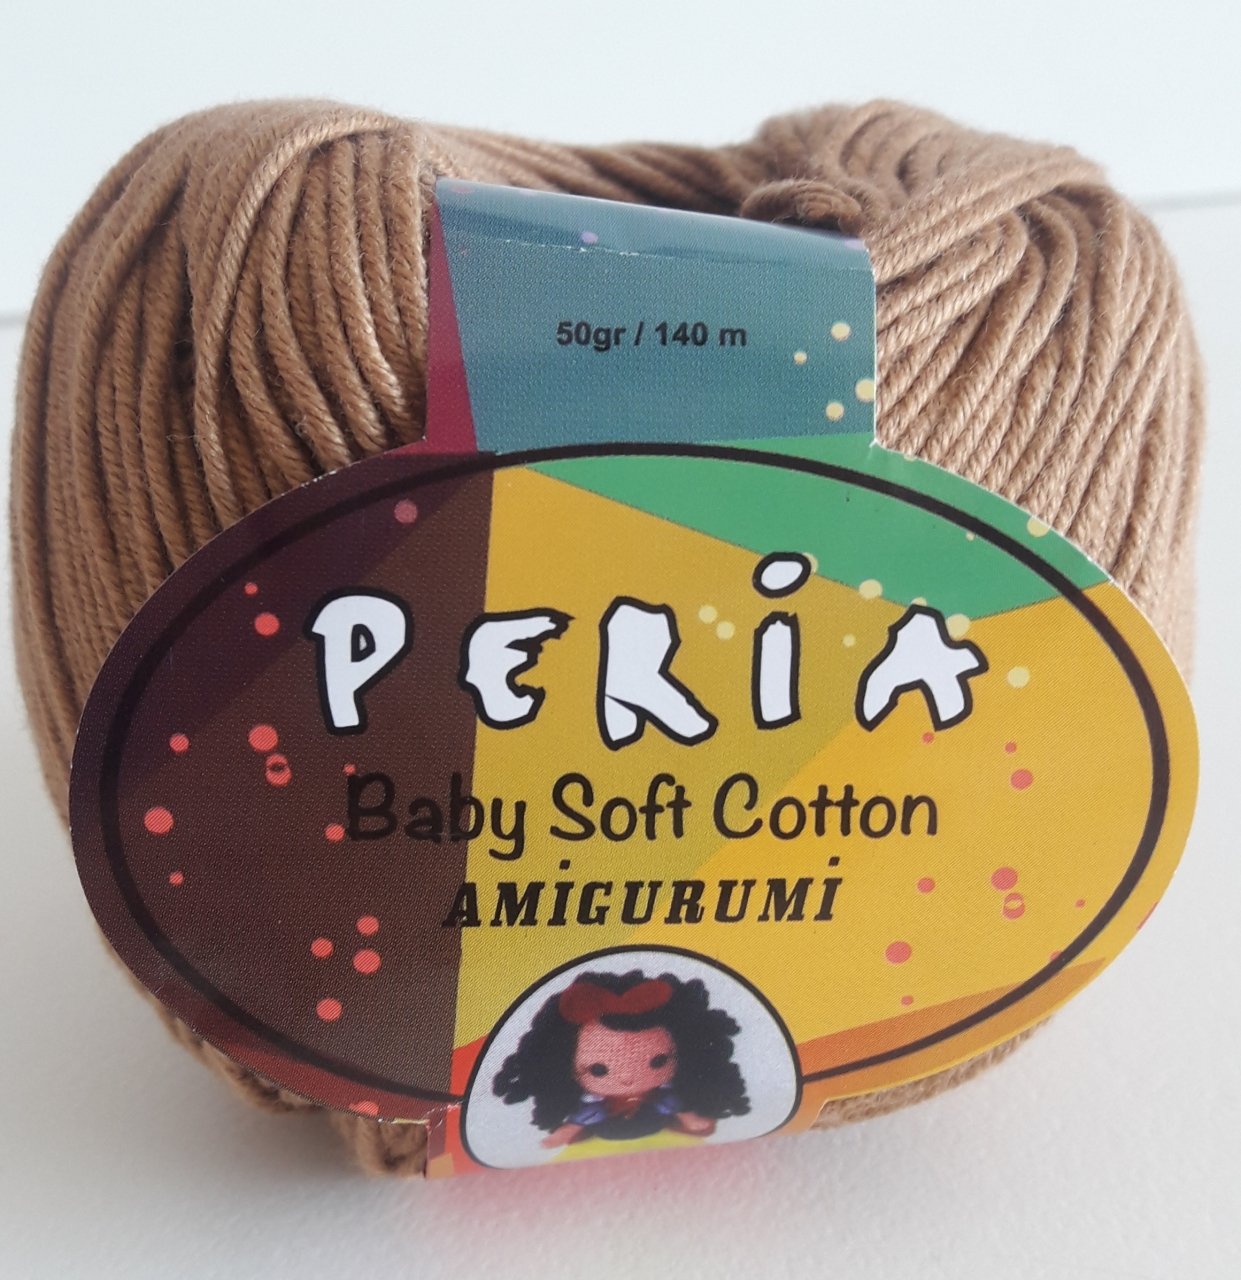 Peria Soft Cotton- 9 SÜTLÜ KAHVE